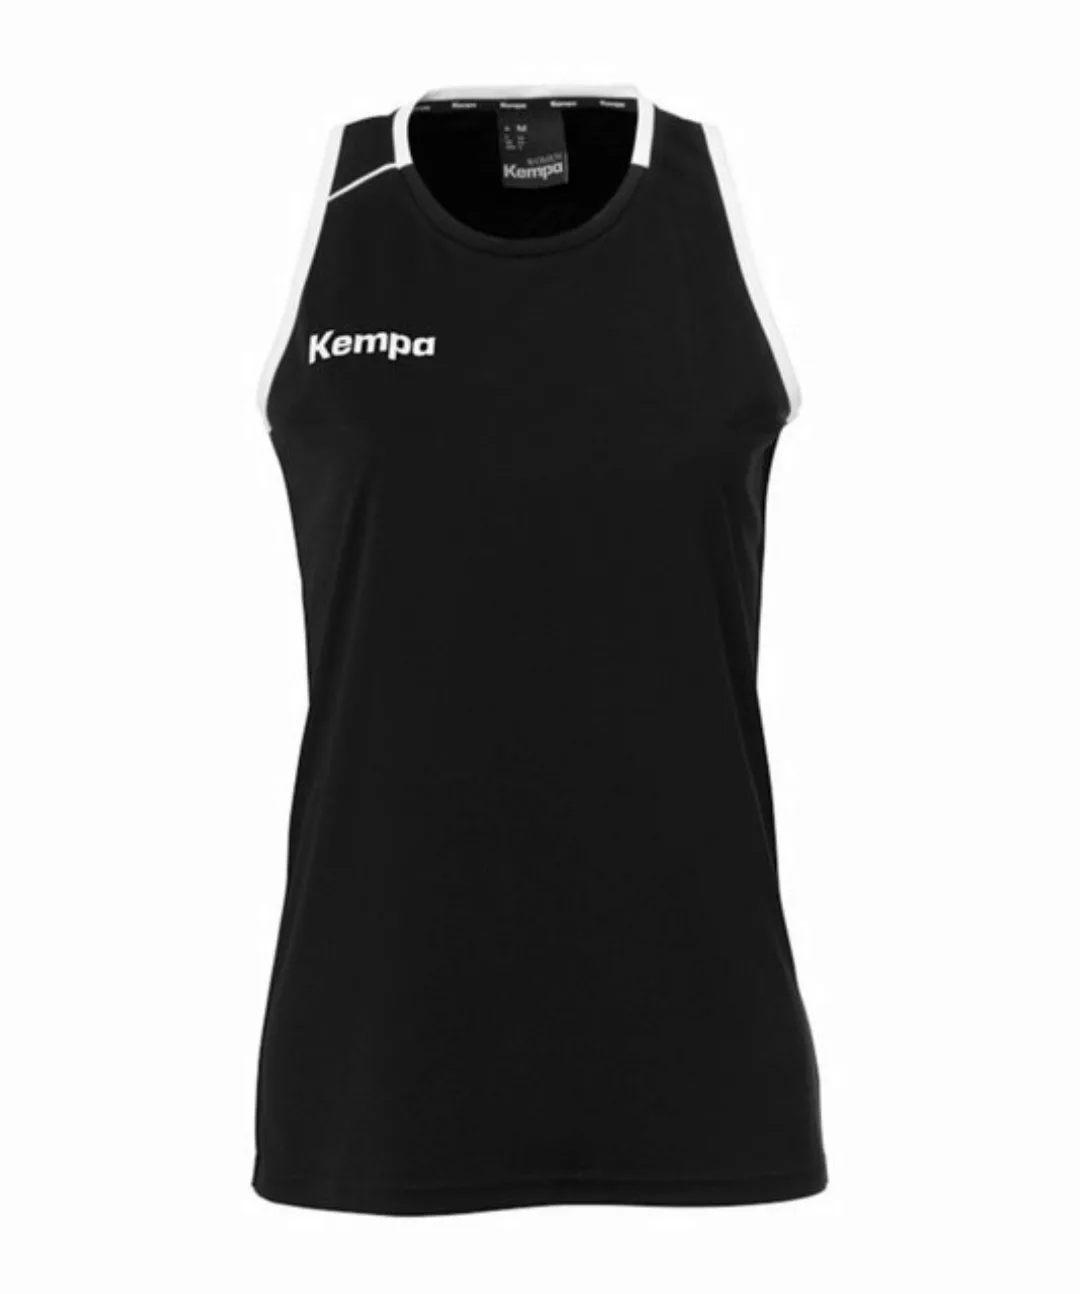 Kempa T-Shirt Player Tank Top Damen default günstig online kaufen